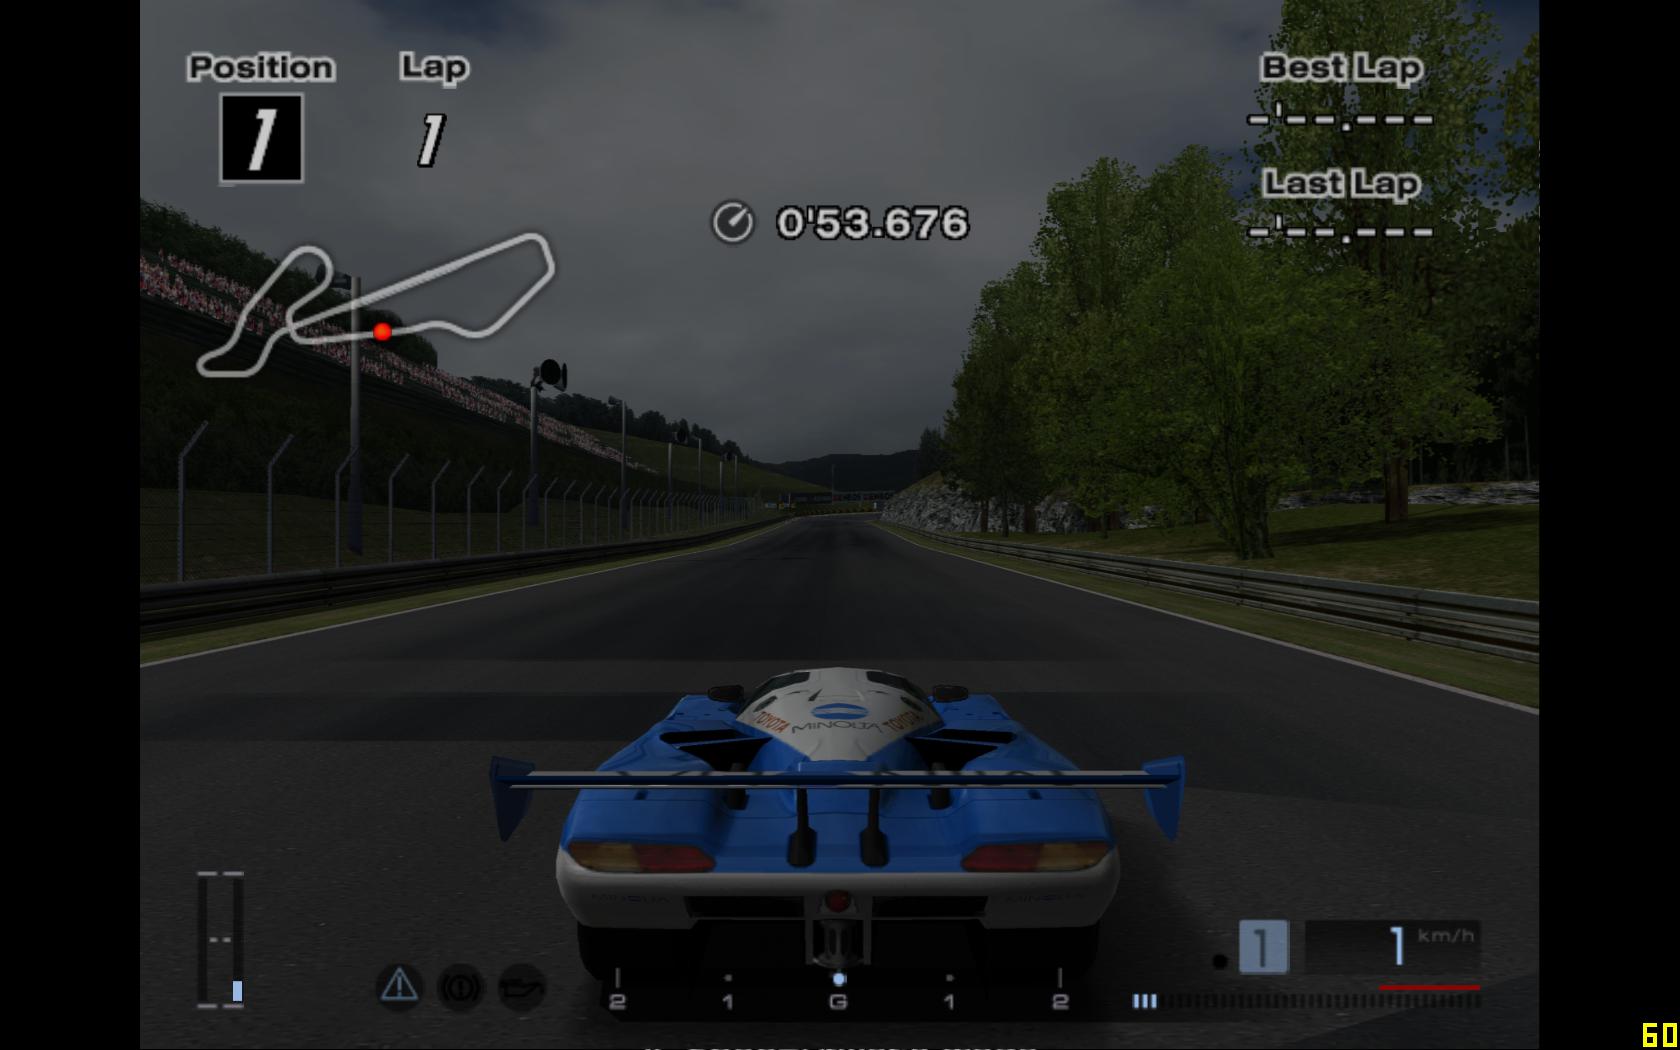 How do I set up Gran Turismo 4 emulator?